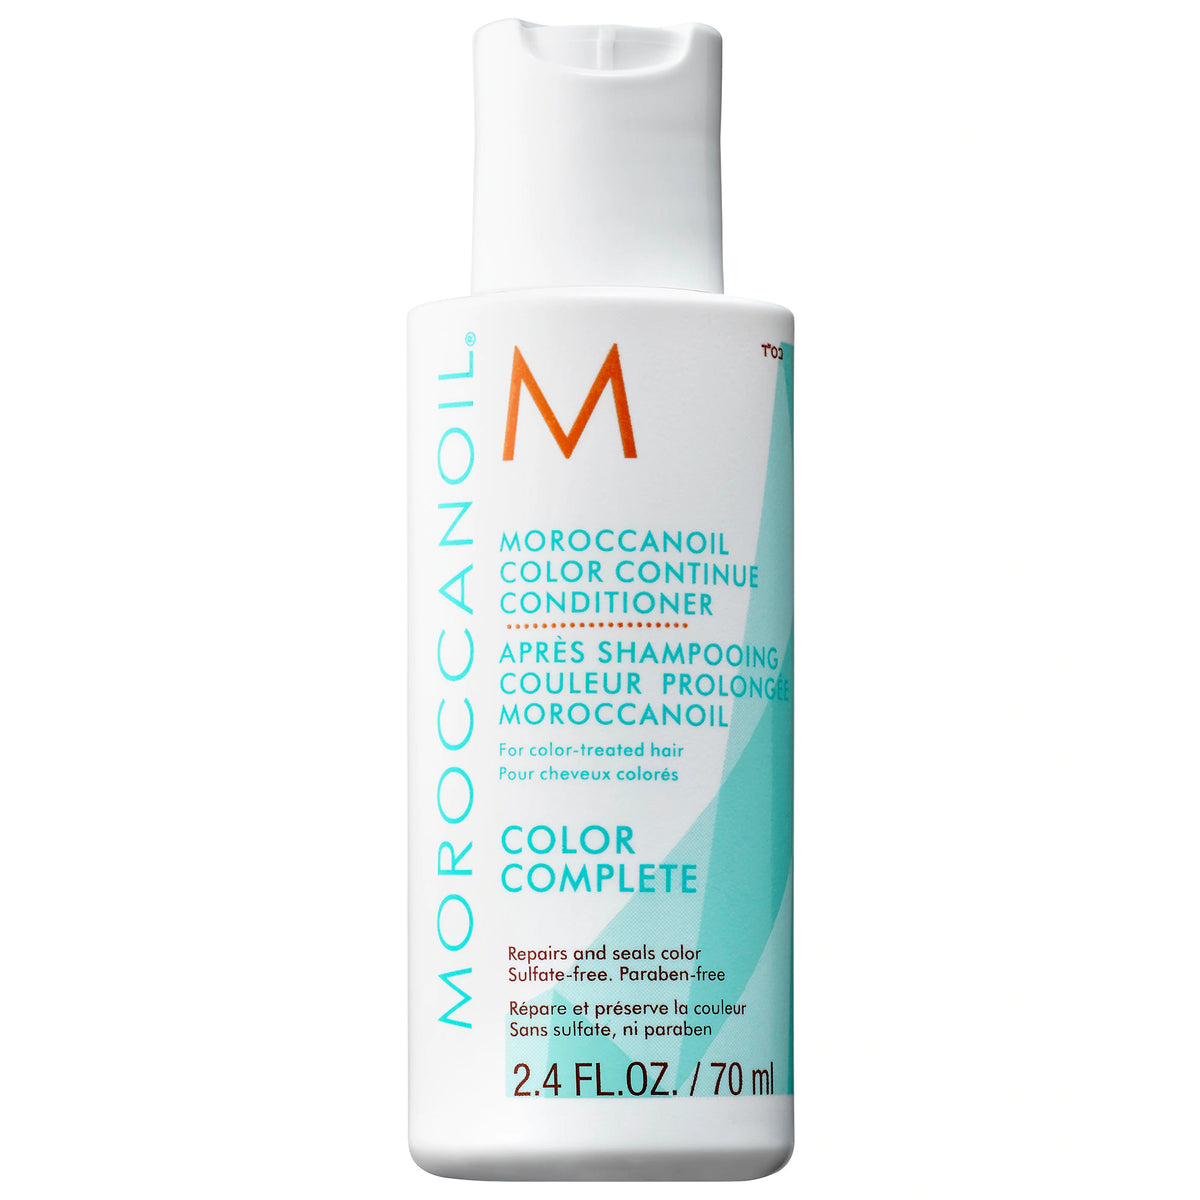 Moroccanoil Color Continue Conditioner - Totality Medispa and Skincare